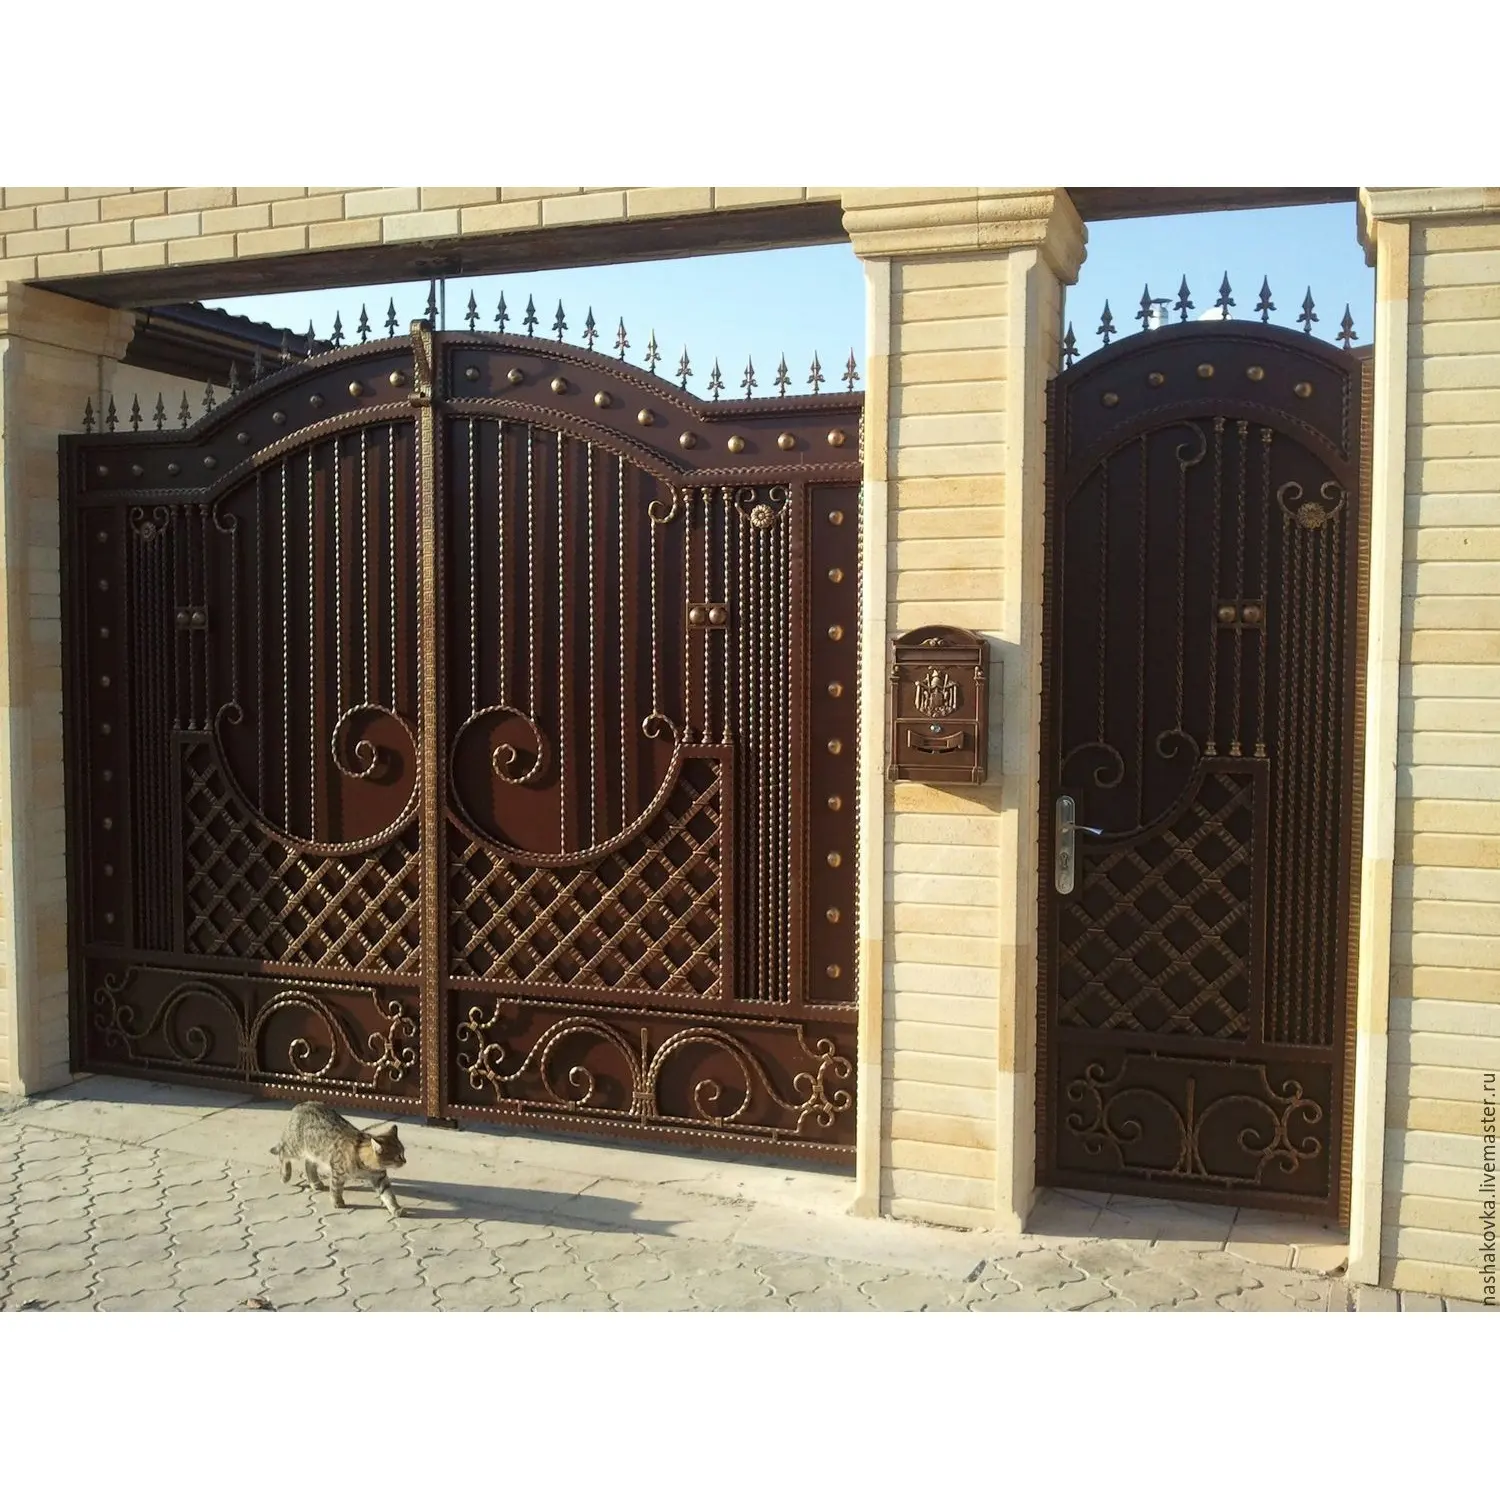 Desain gerbang besi dari pintu masuk Vila gerbang tempa besi hitam dekoratif